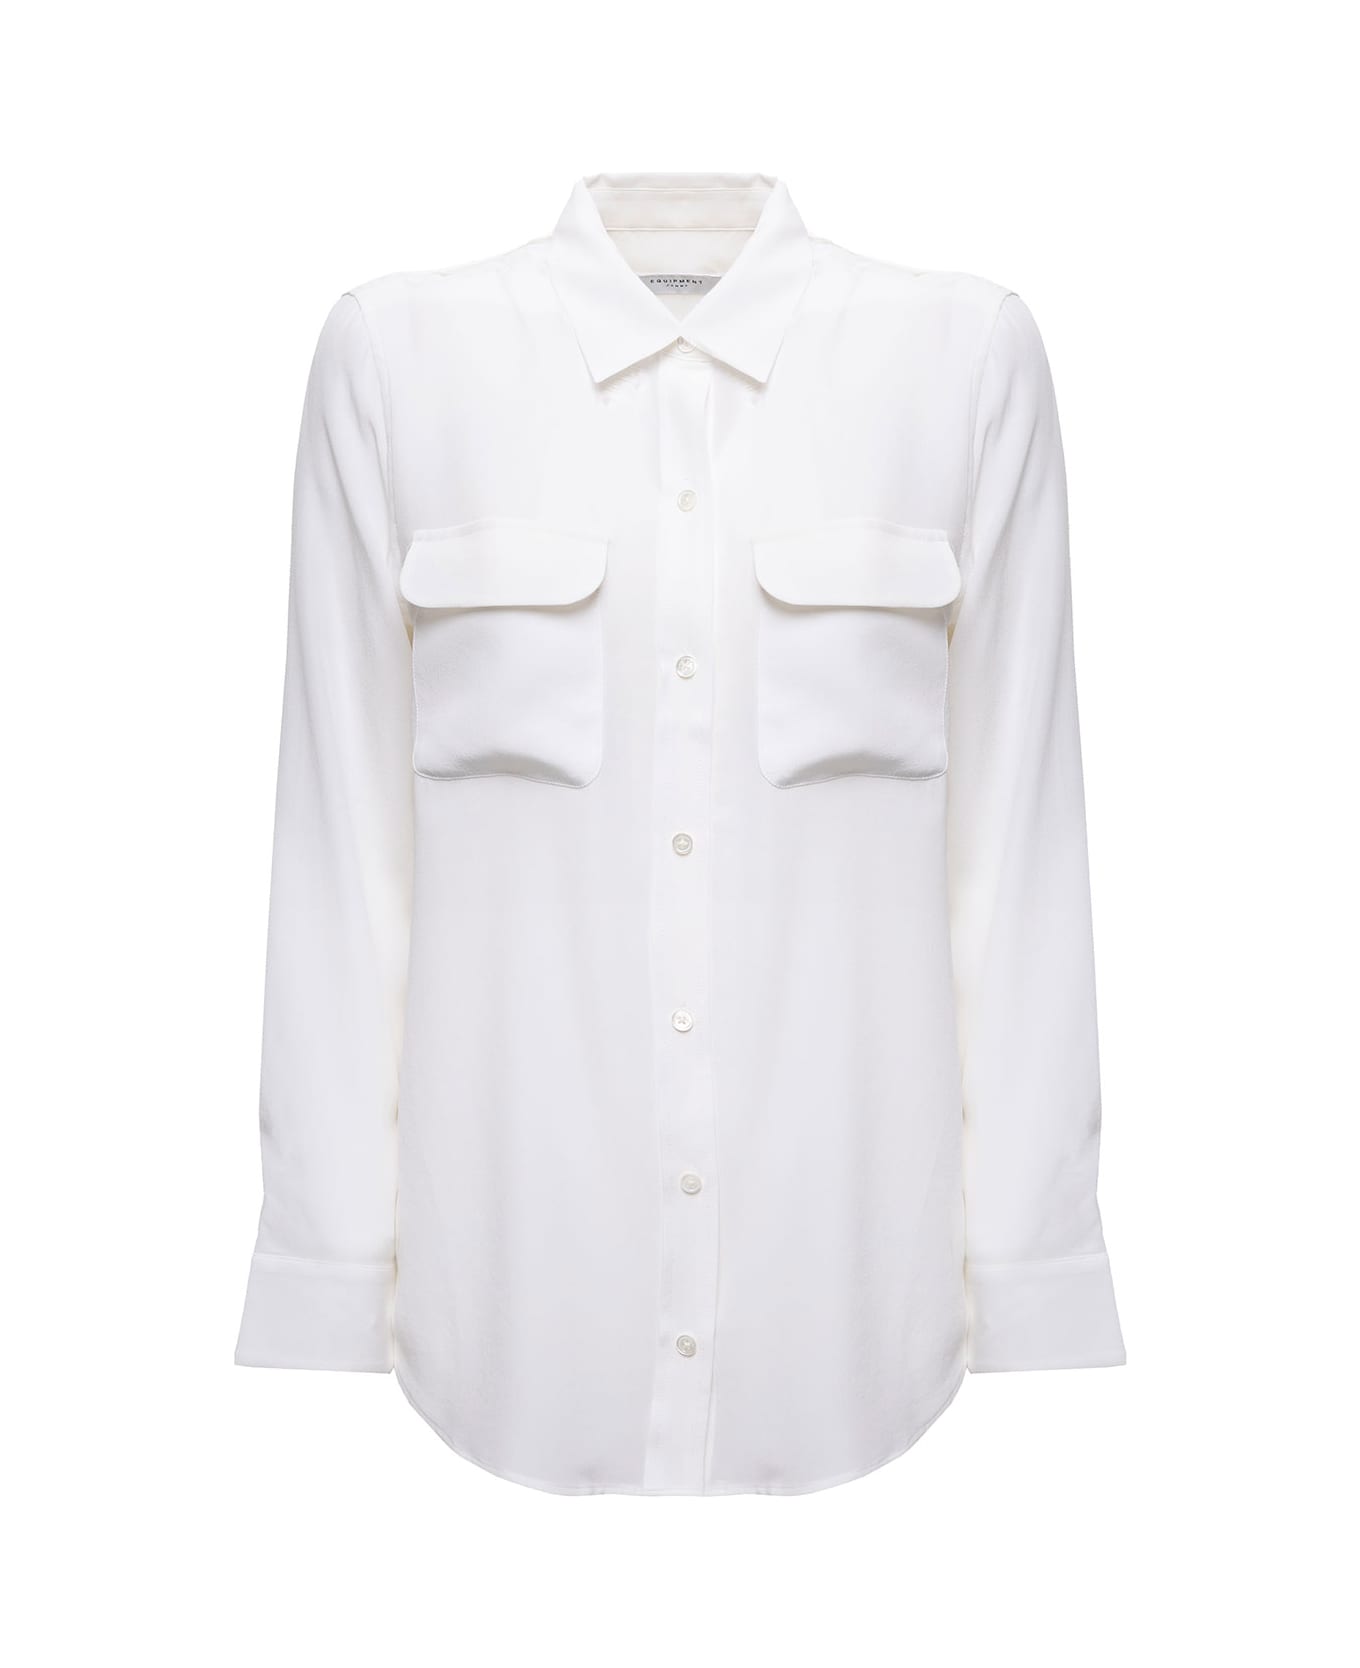 Equipment 'slim Signature' Silk White Shirt Woman - Bianco シャツ